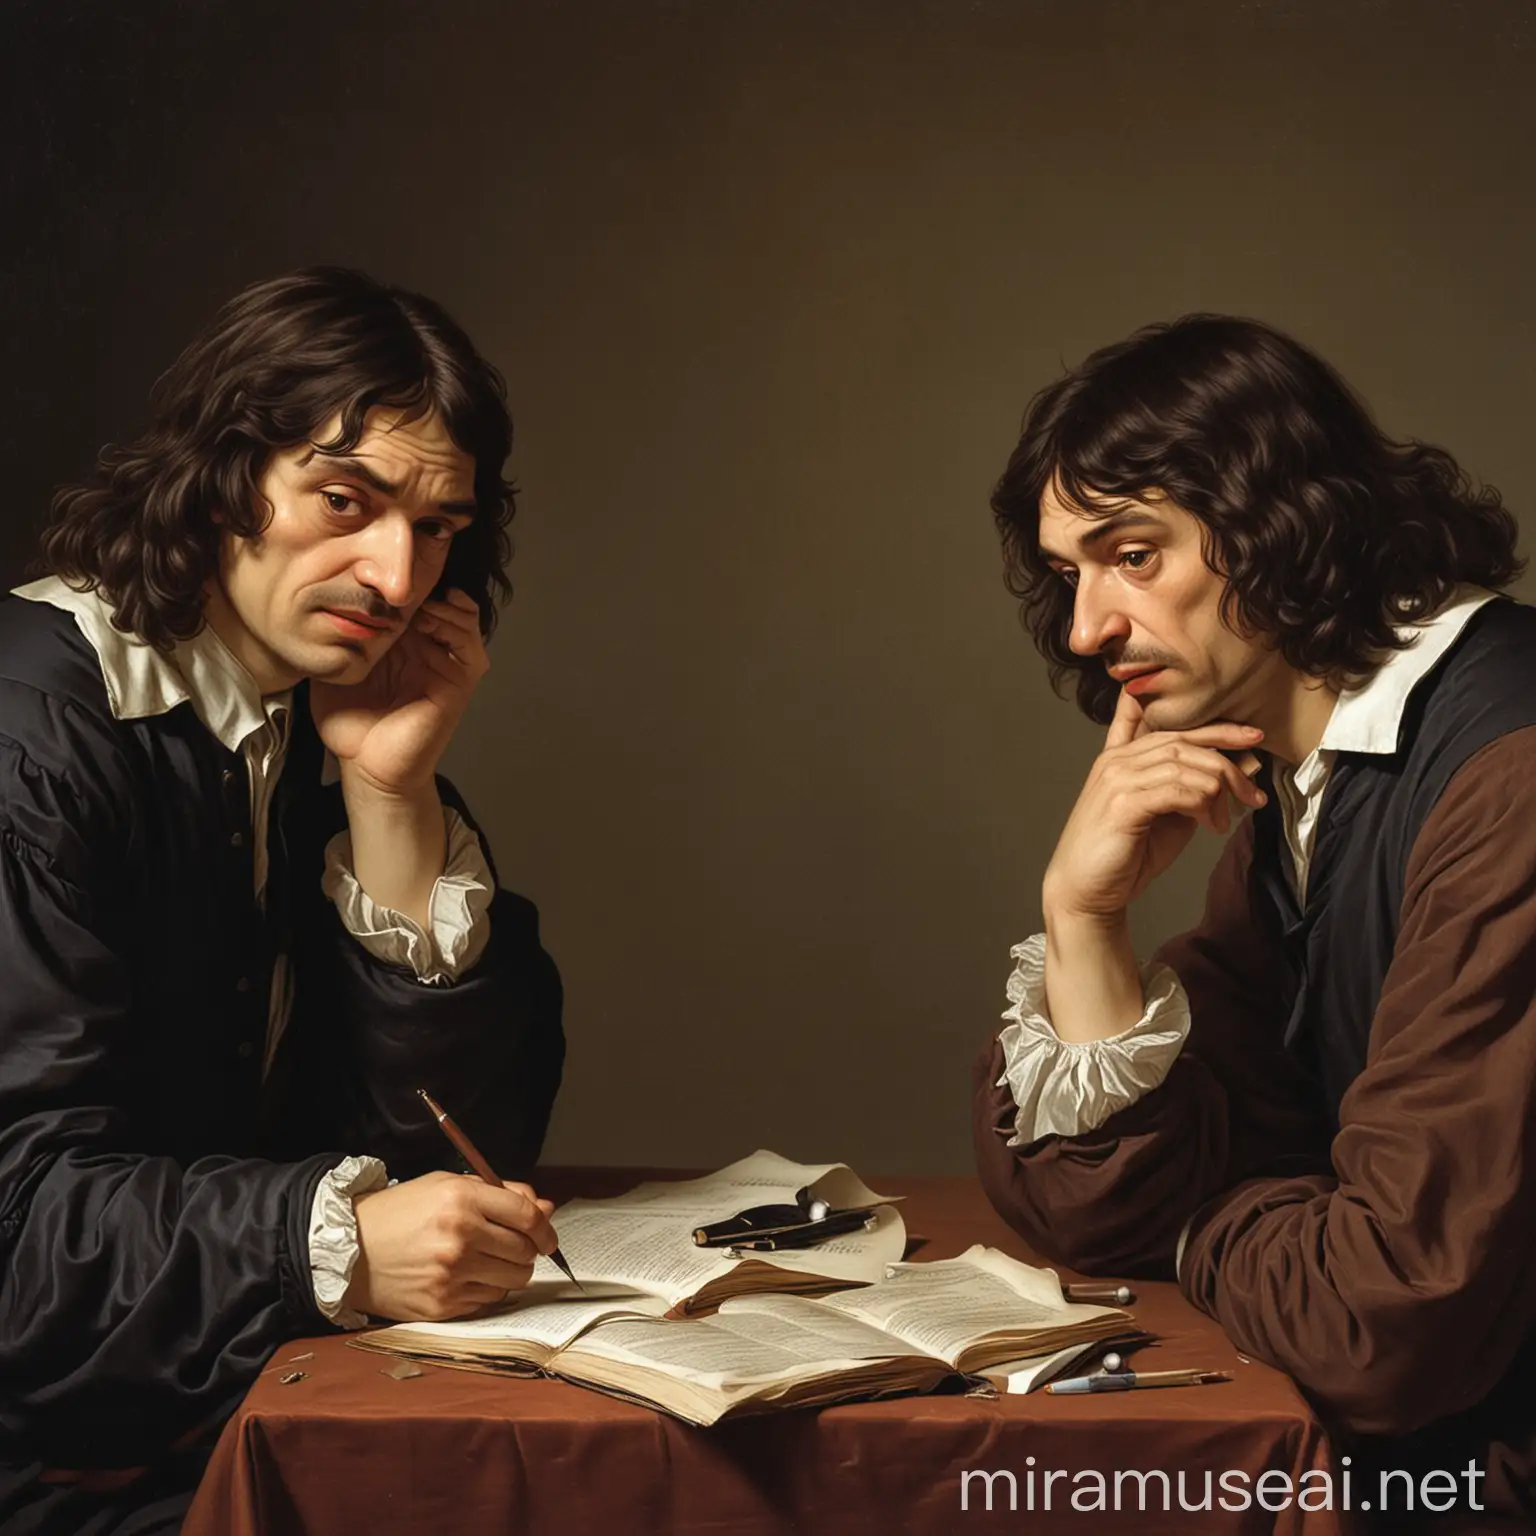 2 Descartes man doubting each other 